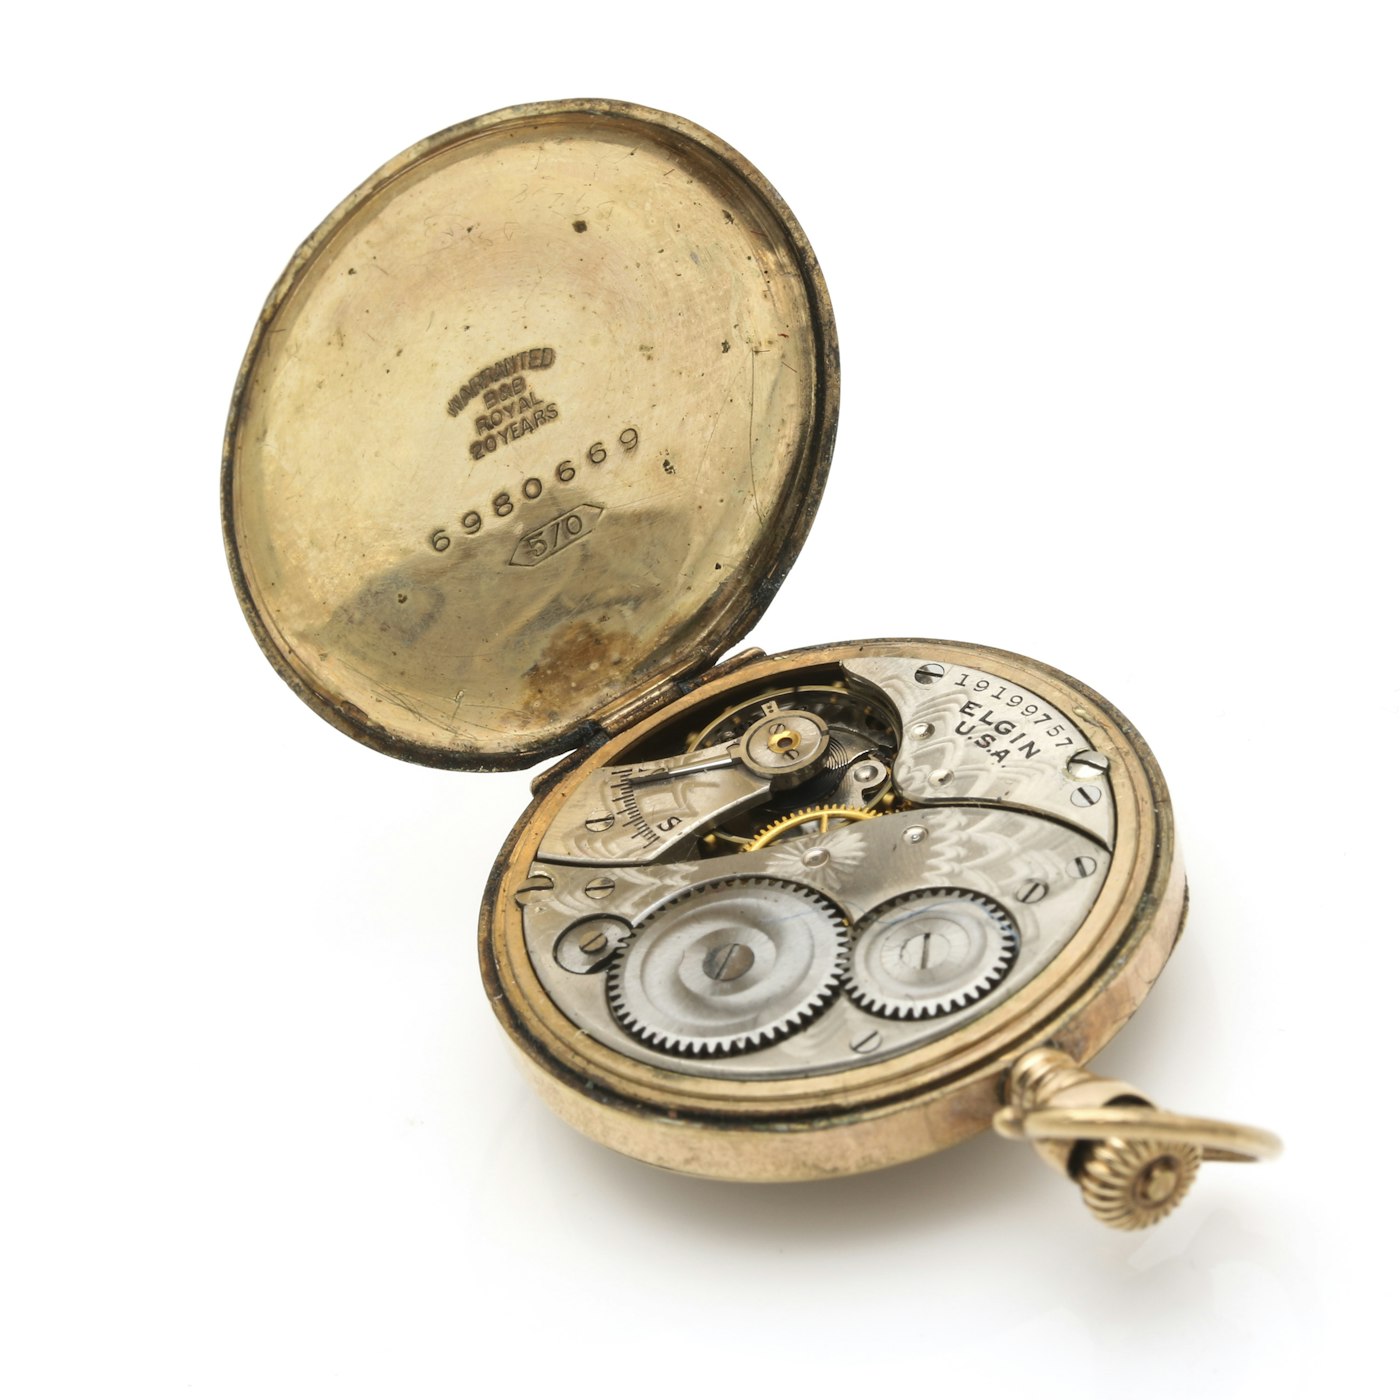 Keystone watch case serial number lookup